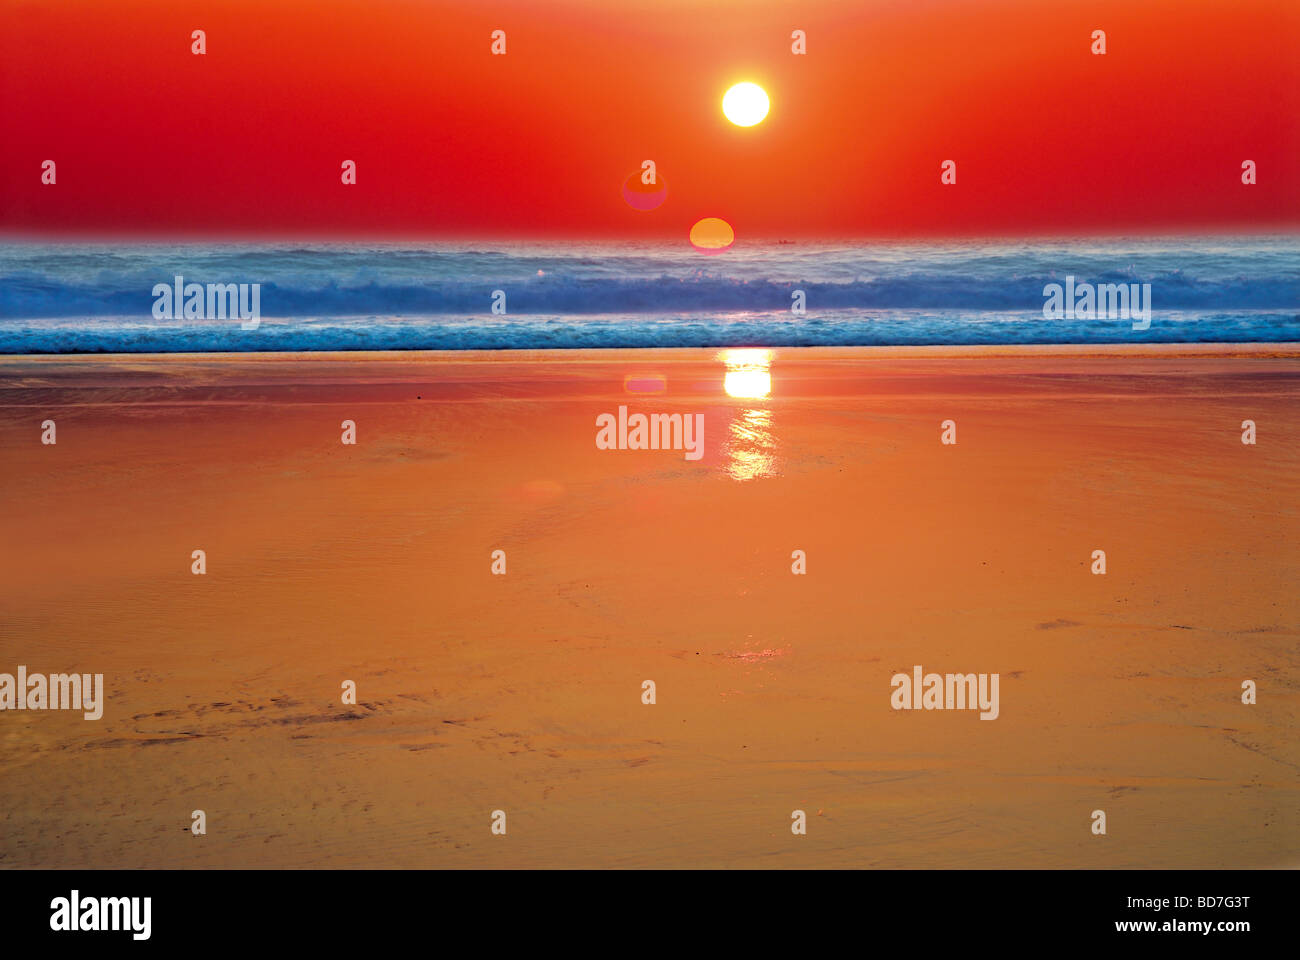 Il Portogallo, Algarve: immagine HDR di tre foto al tramonto Foto Stock